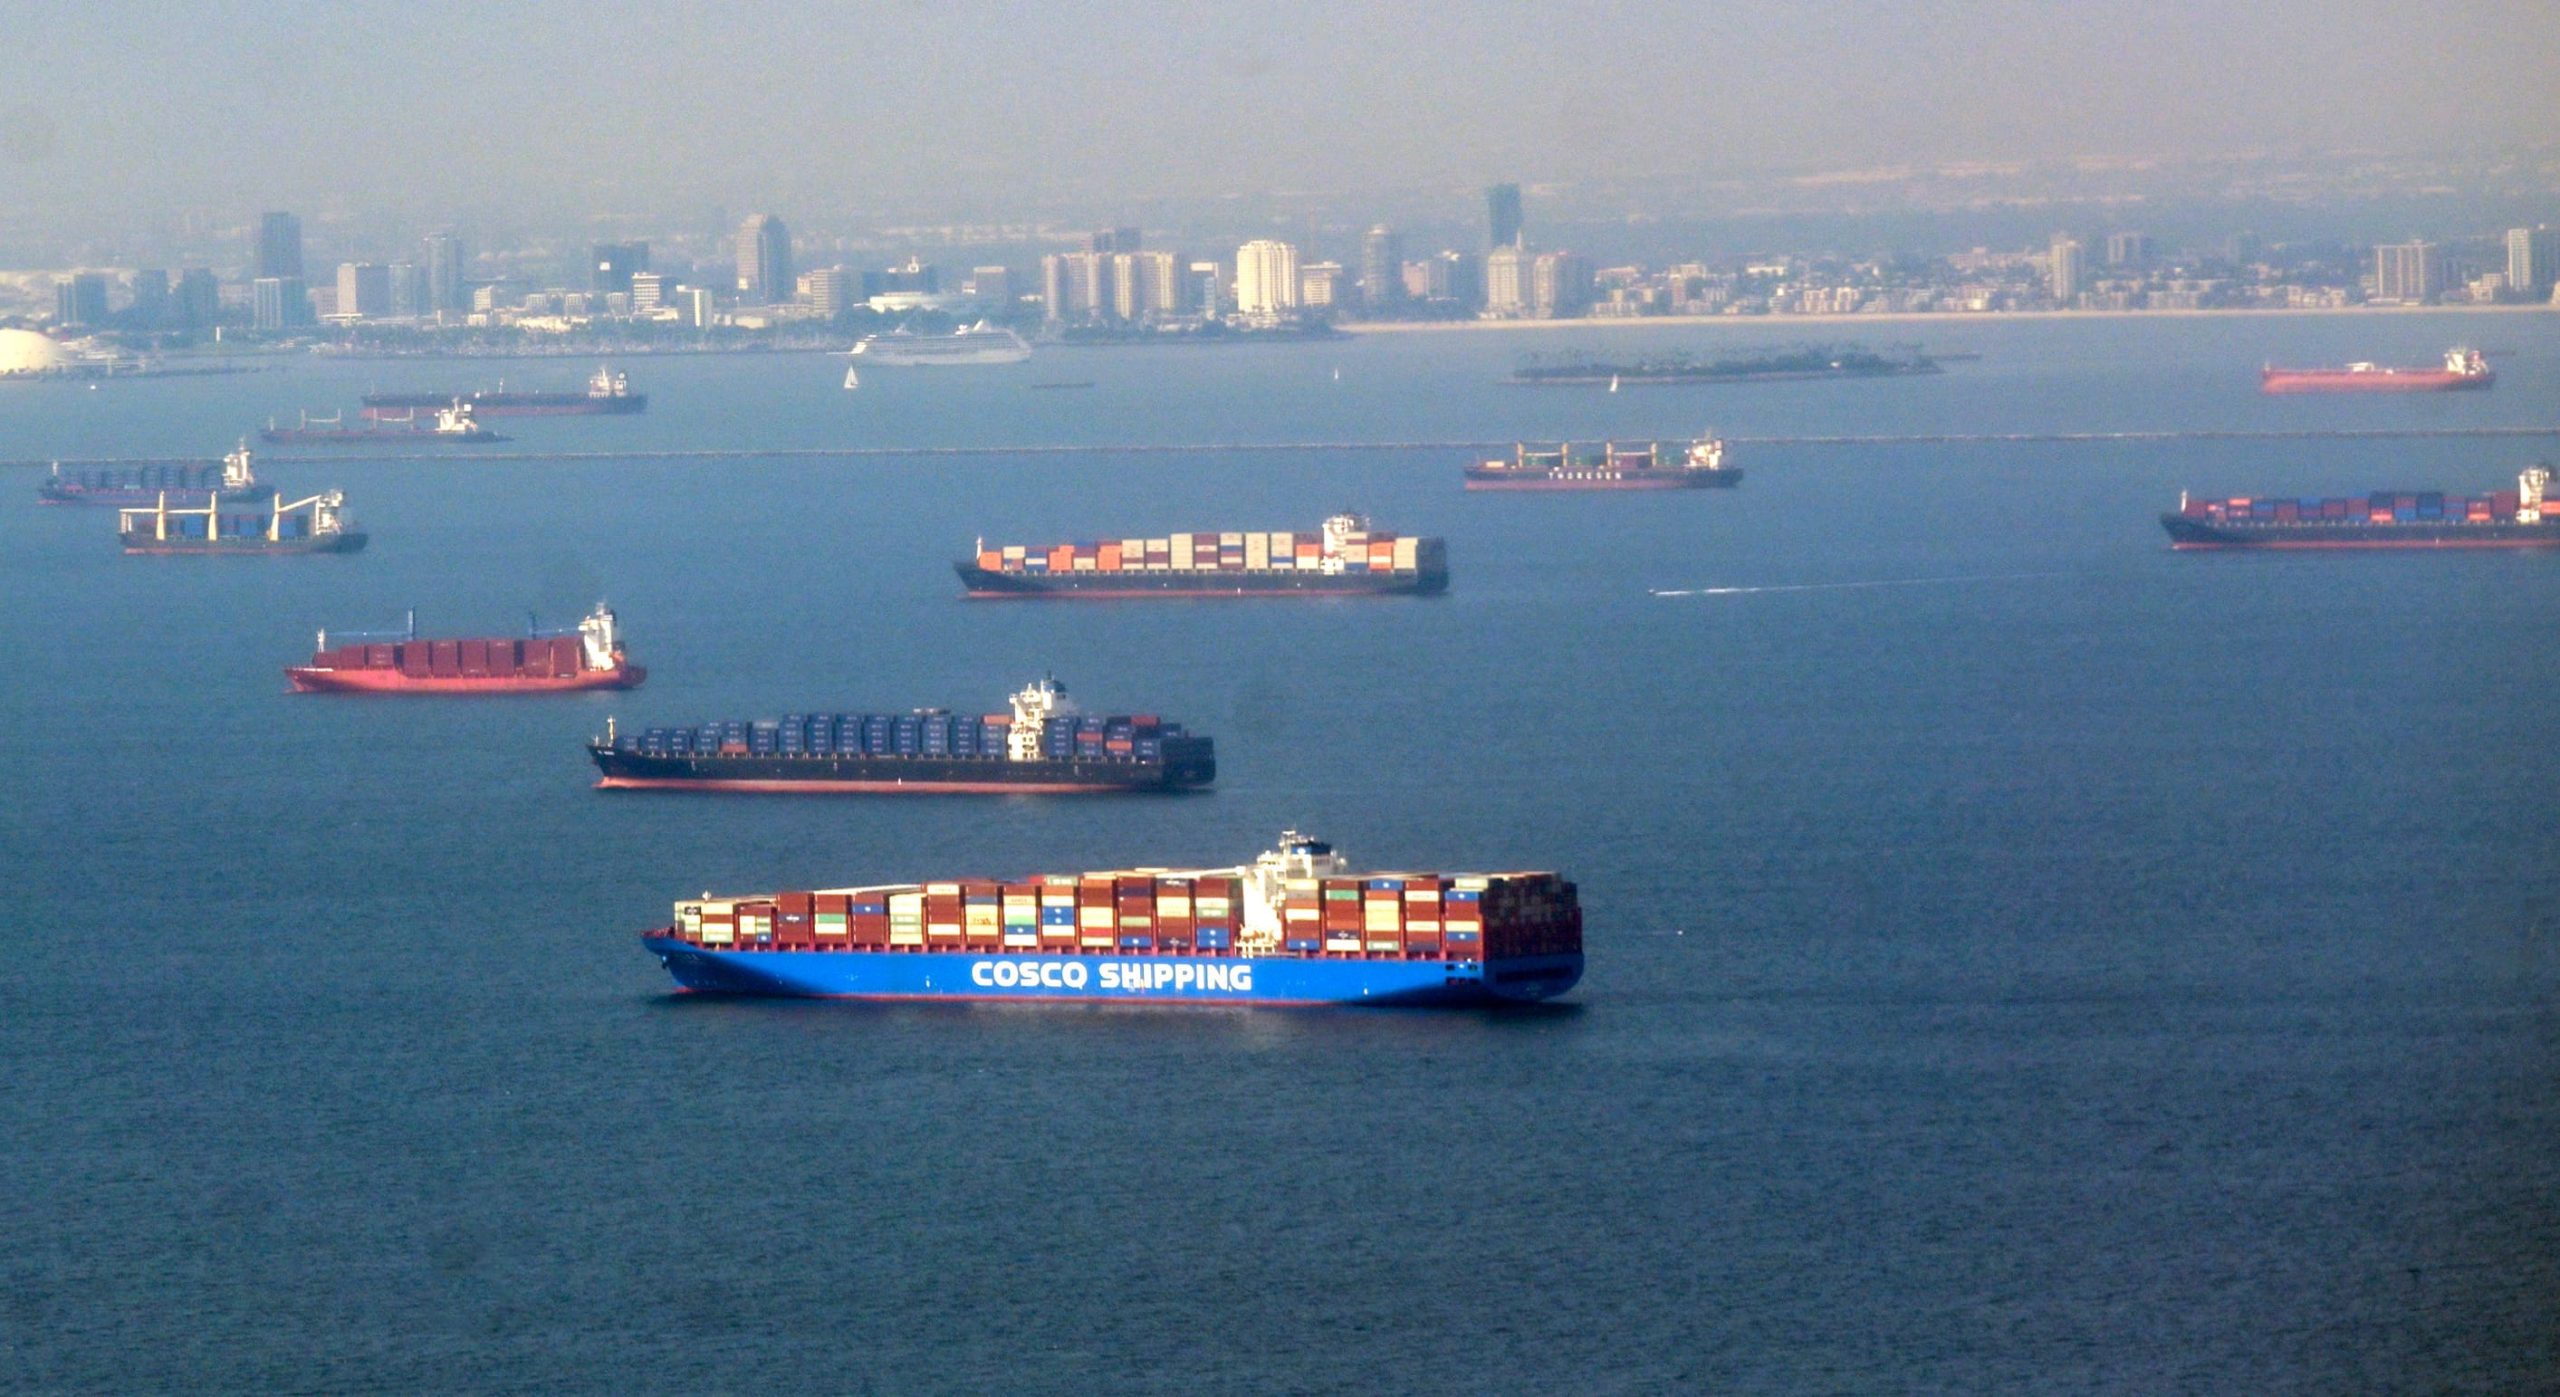 Los muelles de California ven un 'progreso significativo' con la acumulación de la cadena de suministro, dice el jefe del puerto